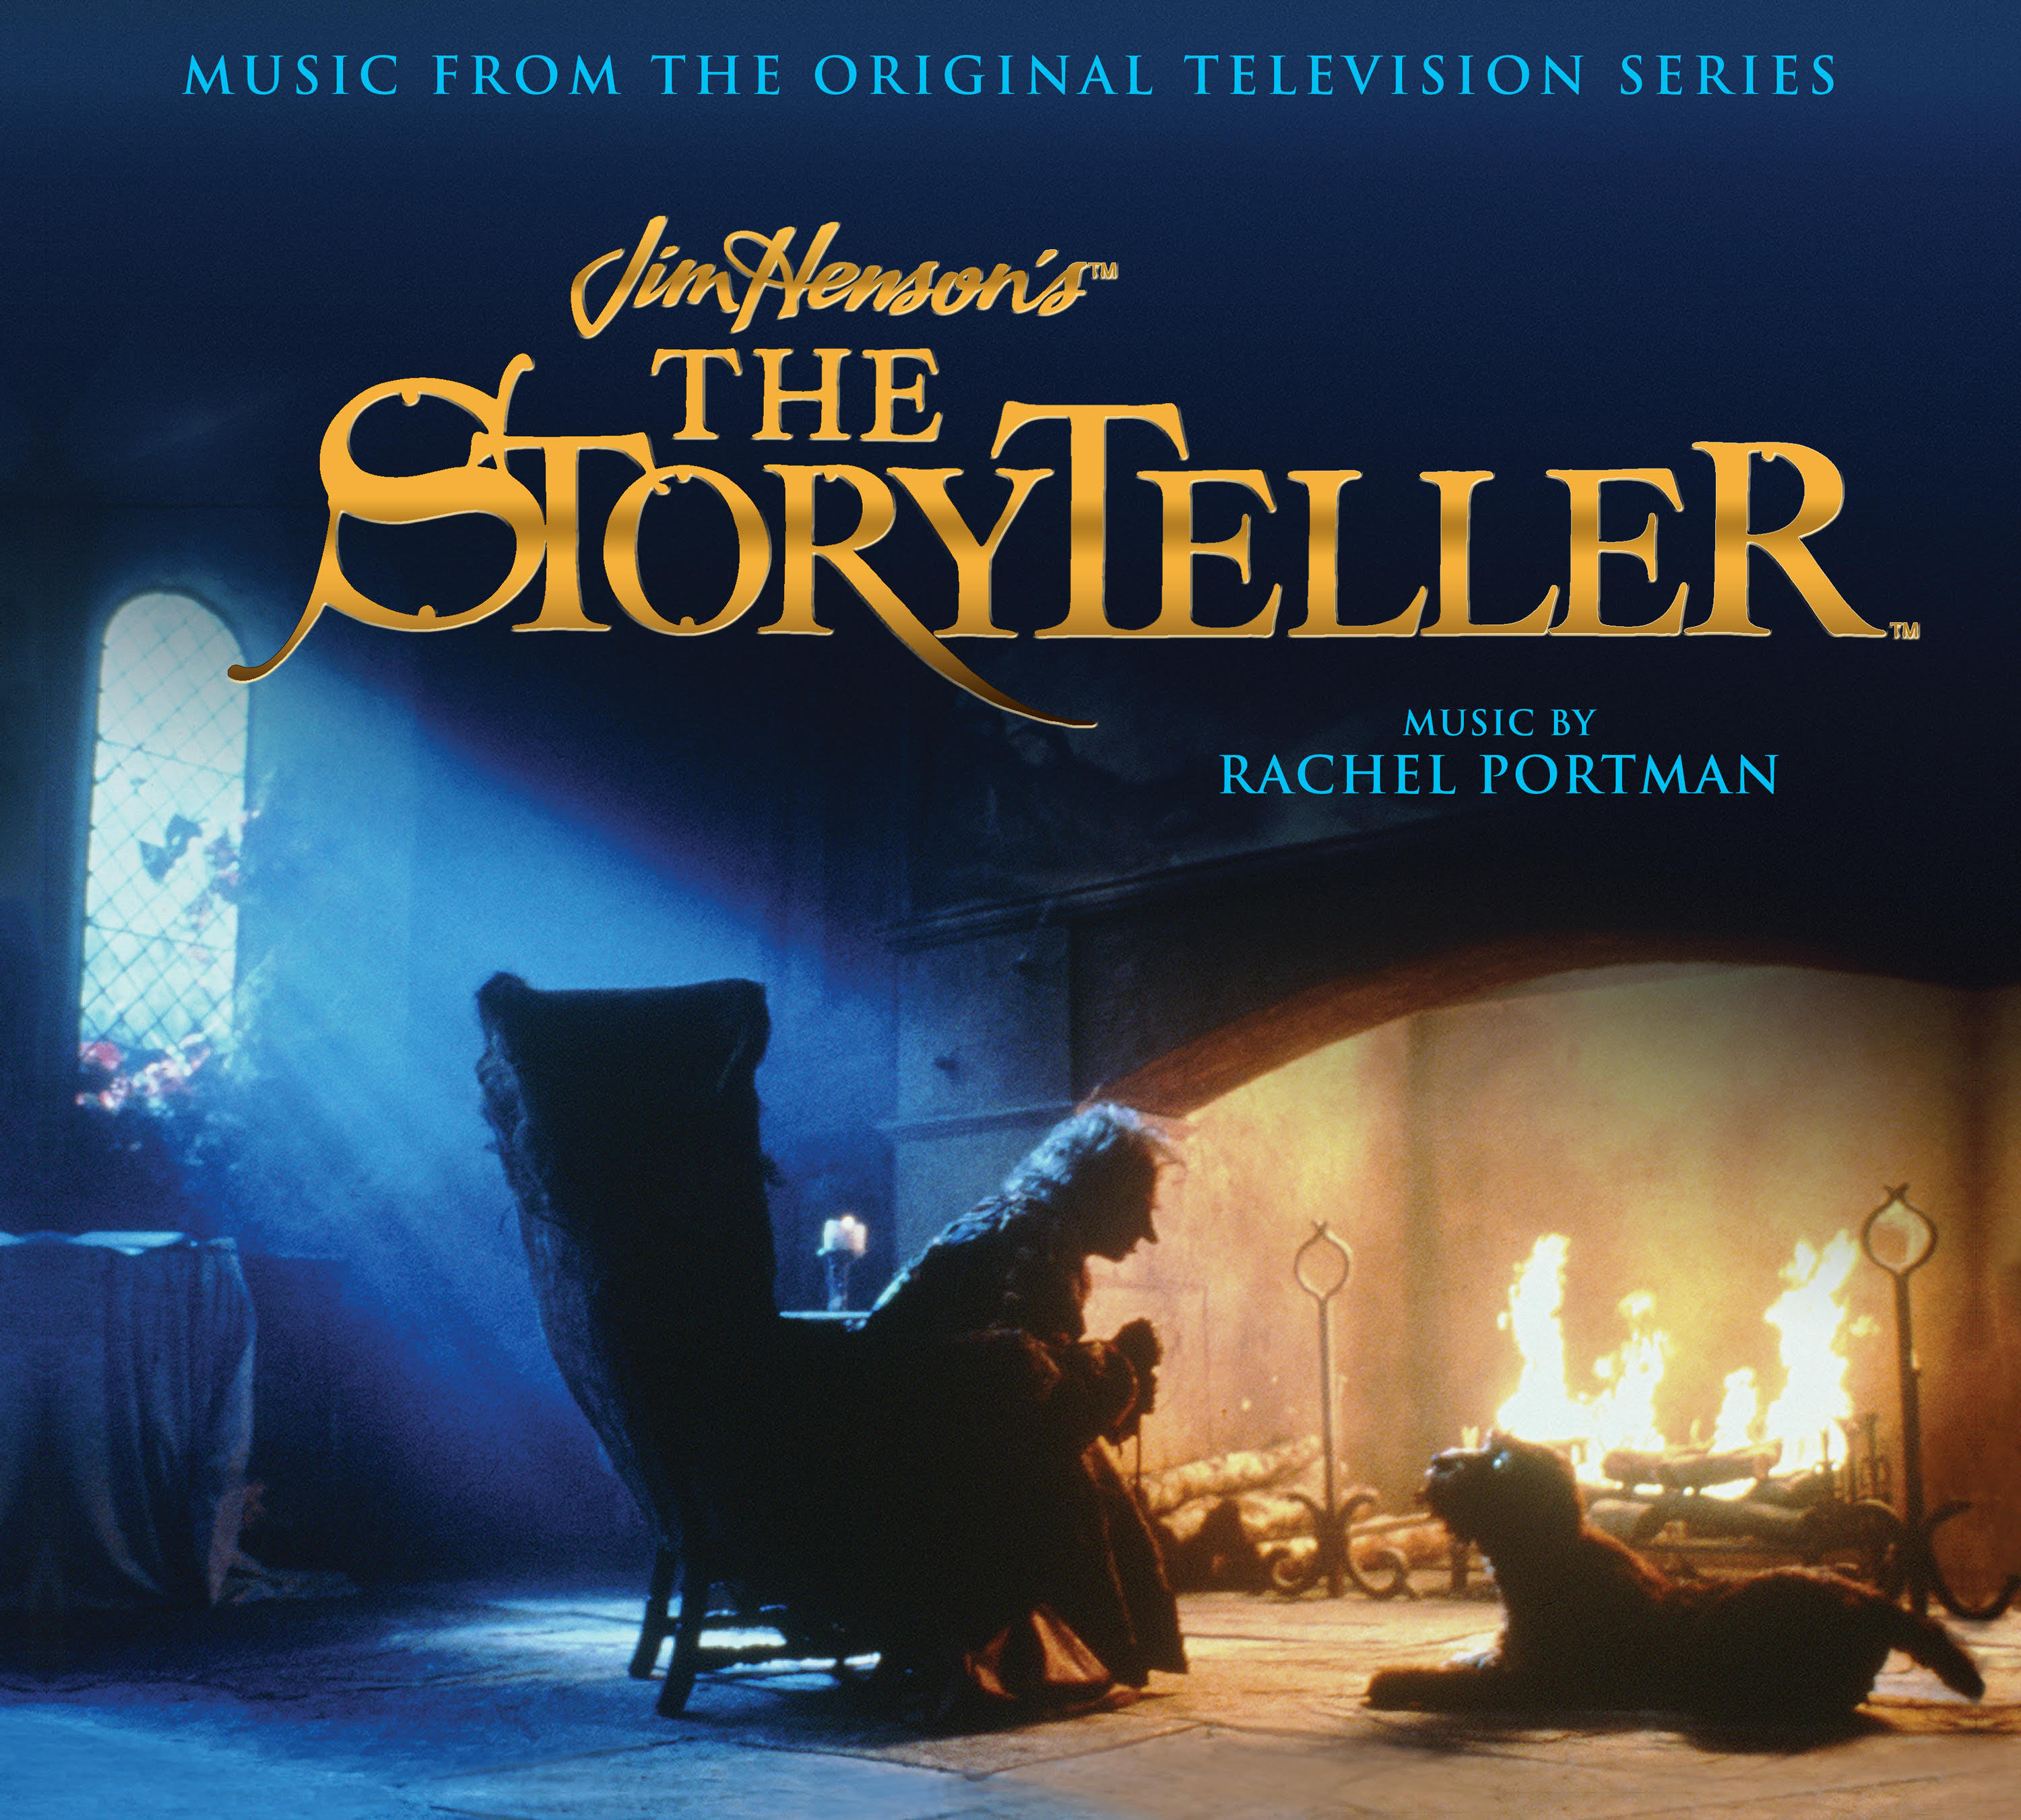 Jim Hensons The Storyteller boxed set (Rachel Portman)